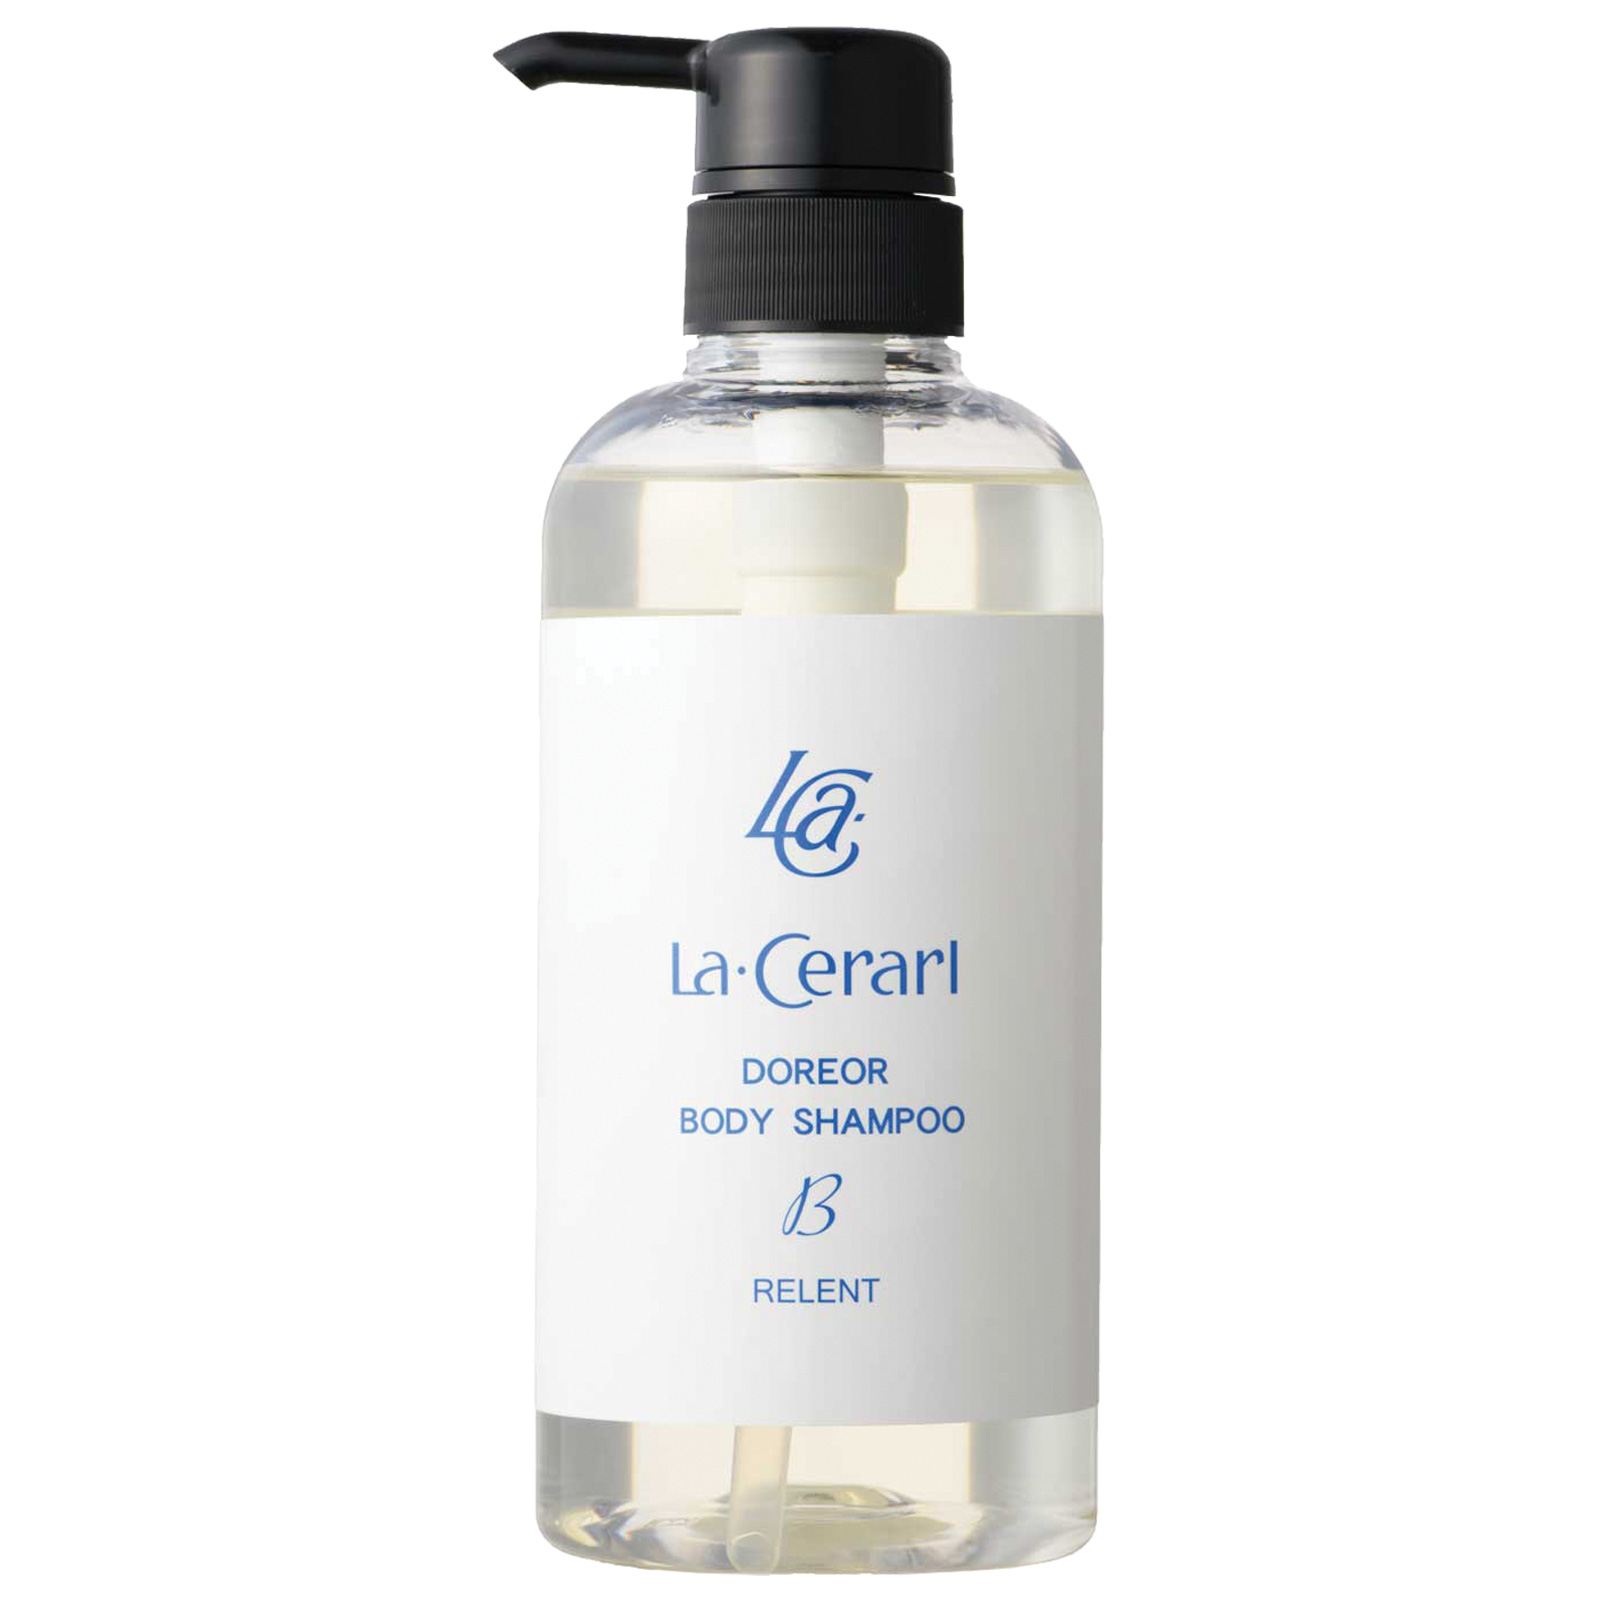 Relent La Cerarl Doreor Body Shampoo. Гель для душа Релент Ла Сераль Дореор, 500 мл